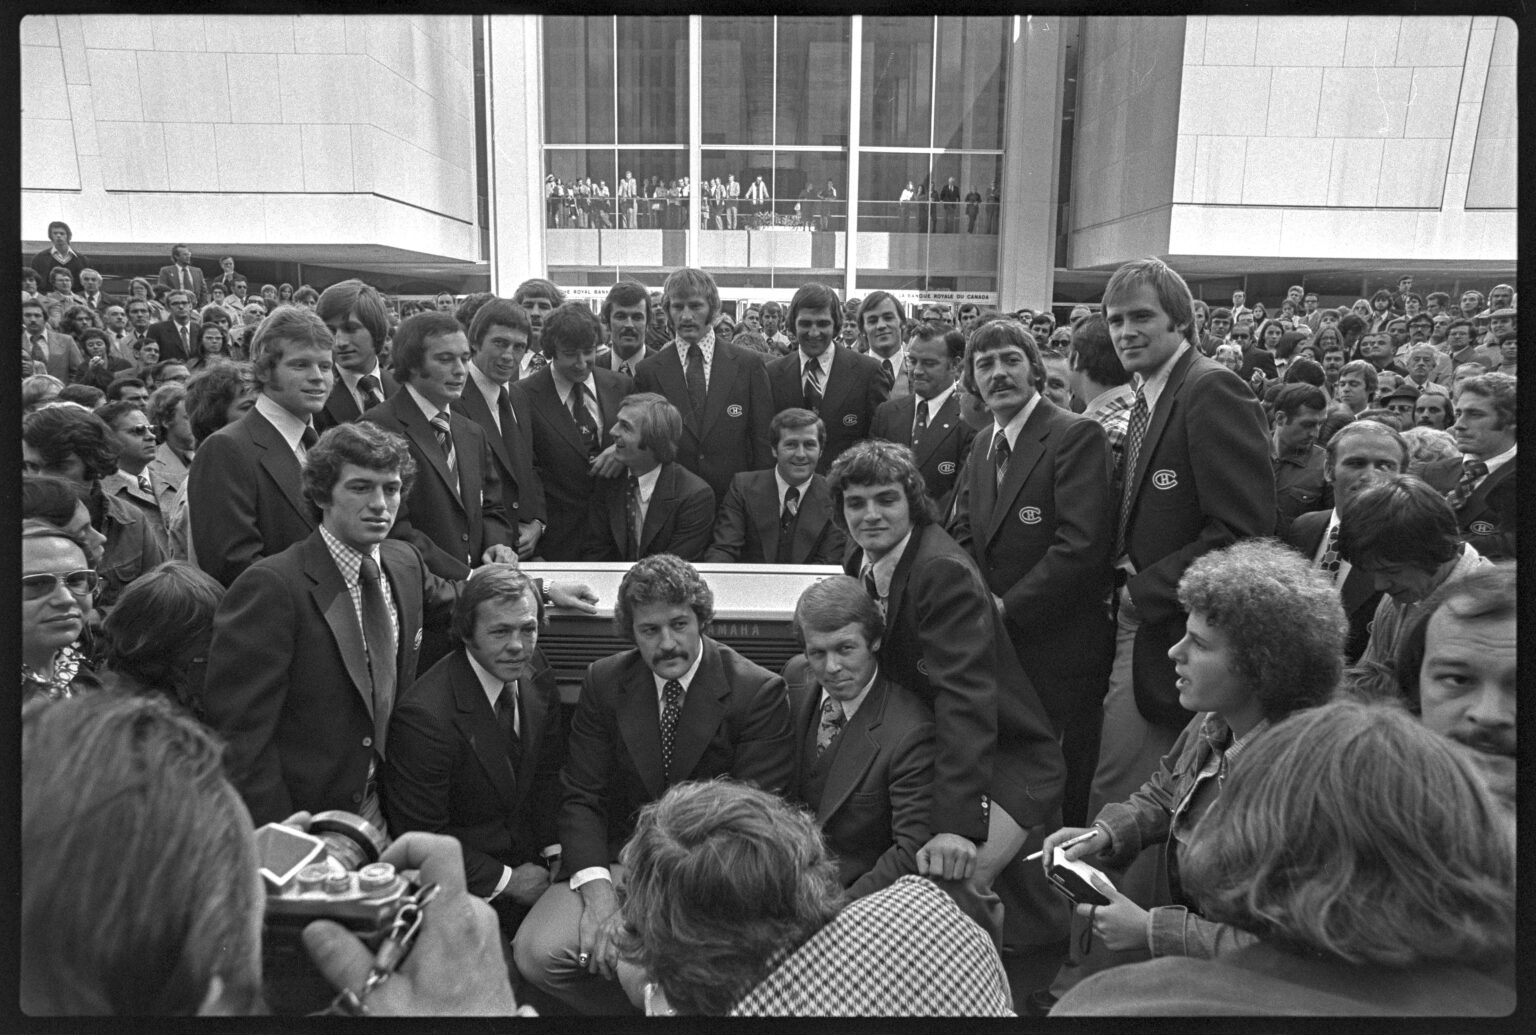 Le 7 octobre 1975, au pied de la Place Ville-Marie, la foule acclame les joueurs de l’alignement des Canadiens de Montréal pour la saison 1975-1976